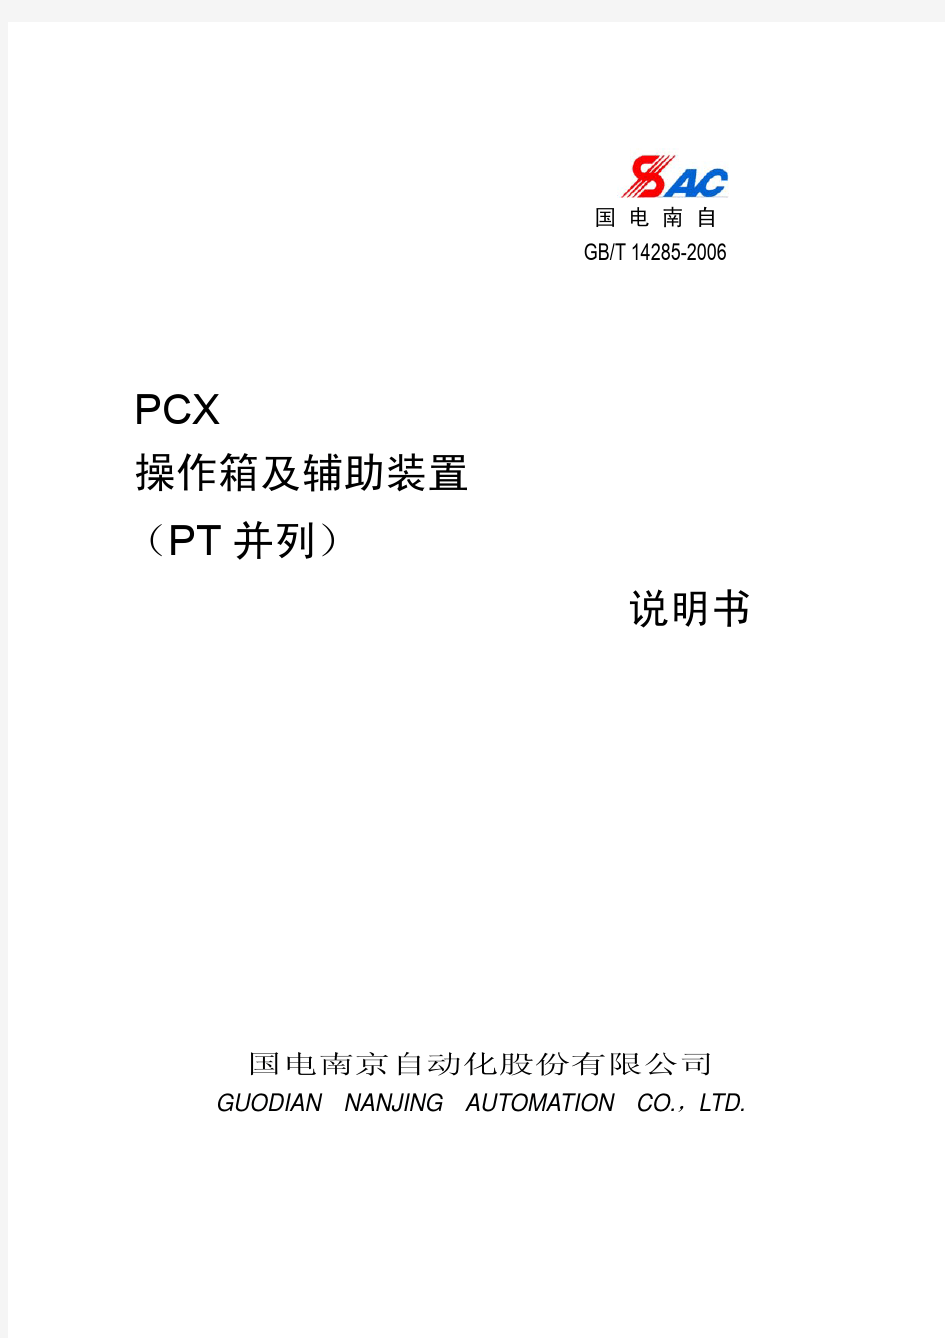 PCX操作箱及辅助装置(PT并列)说明书_V1.22_印刷